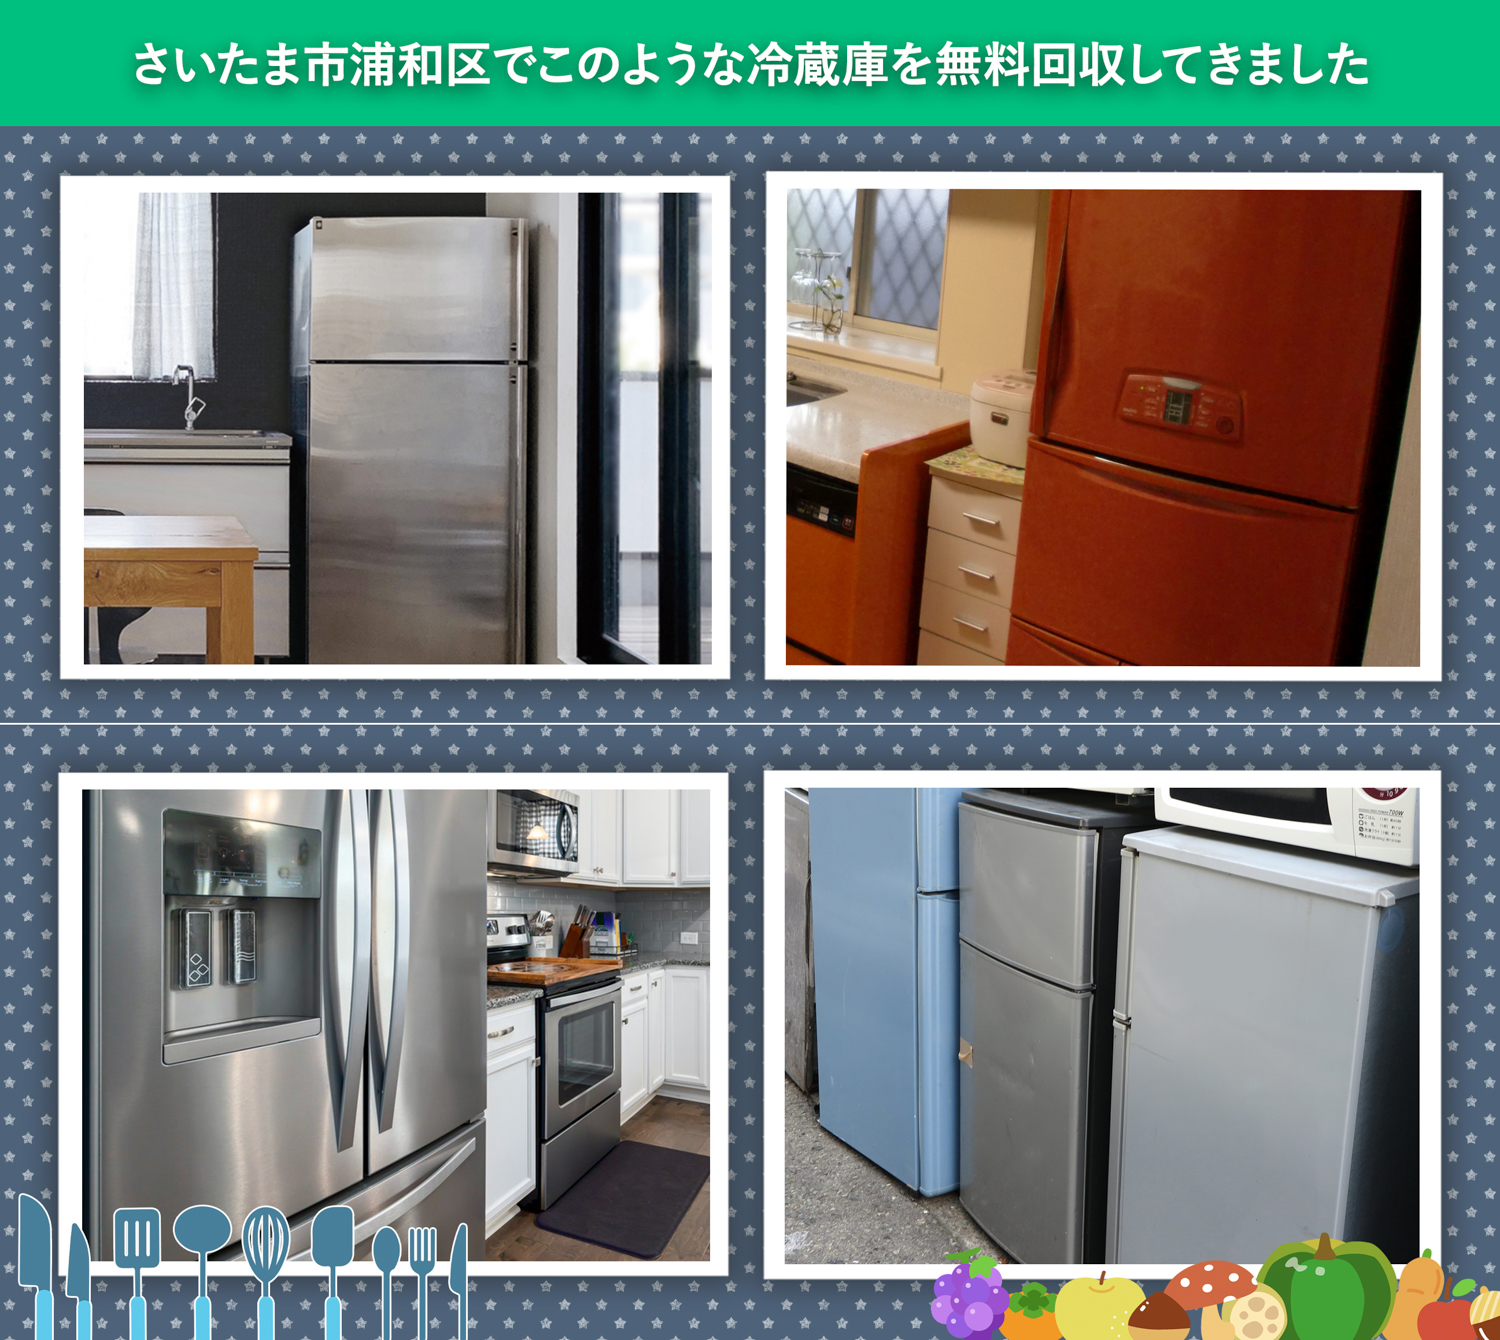 さいたま市浦和区でこのような冷蔵庫を無料回収してきました。